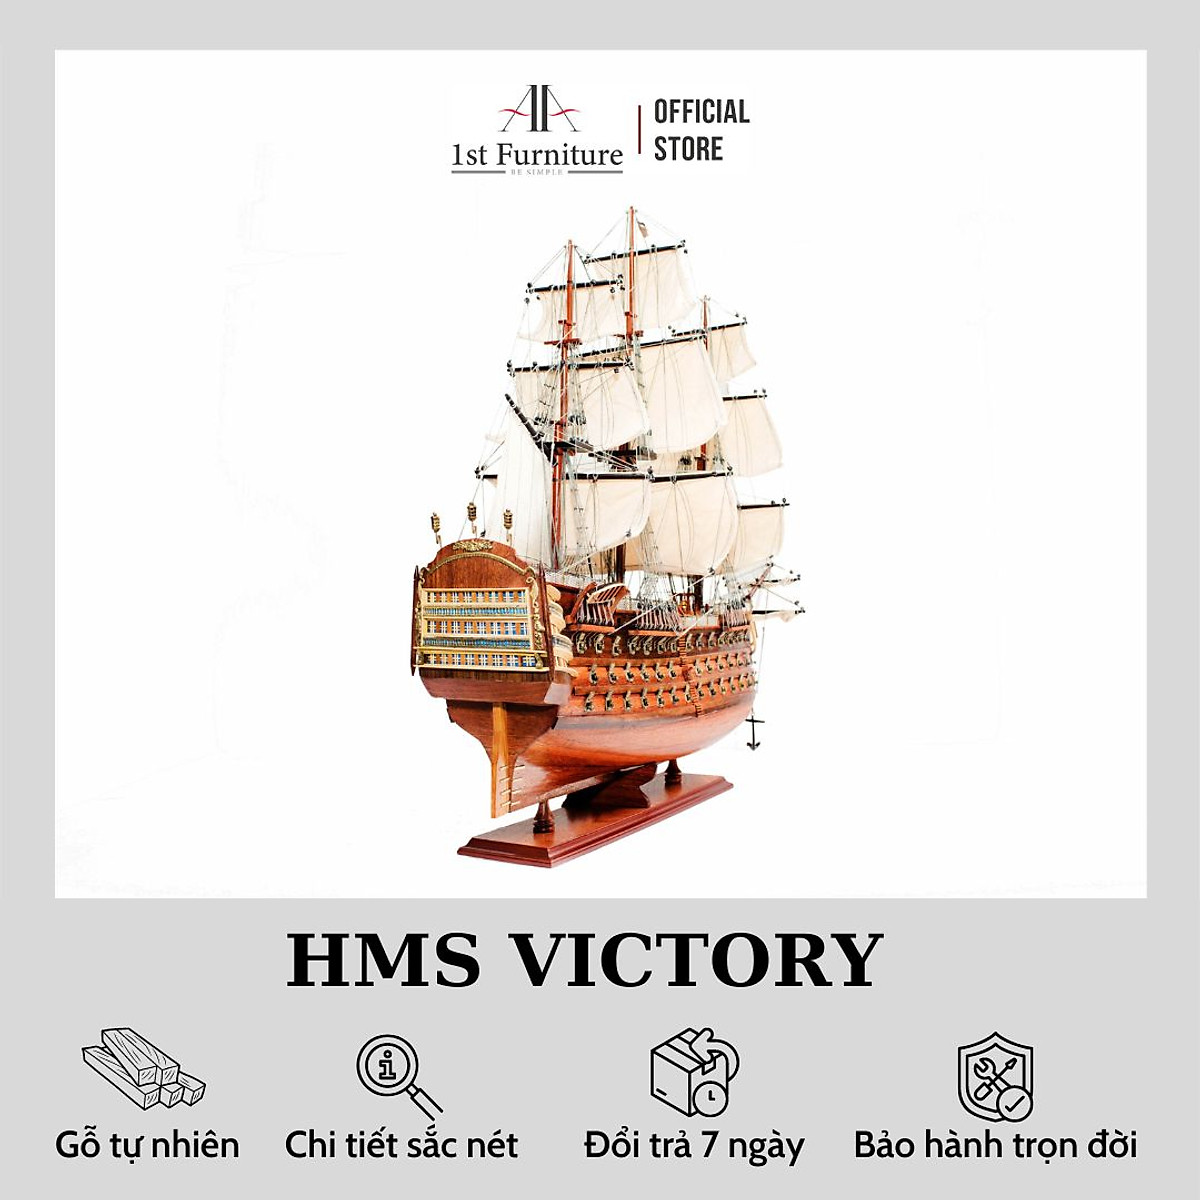 Mô hình thuyền cổ HMS VICTORY cao cấp, mô hình thuyền gỗ tự nhiên ...